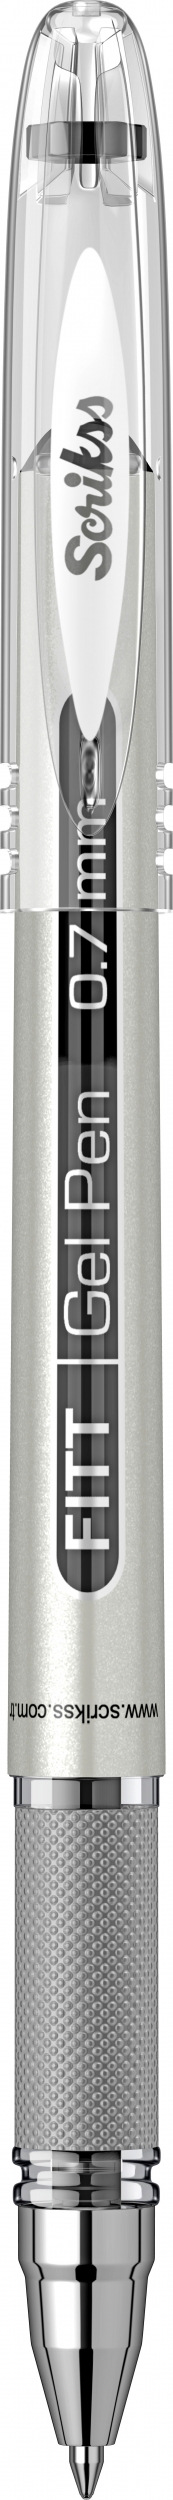 Гел ролер Scrikss Fitt Gel, модел 78652, 0,7 мм., Черен